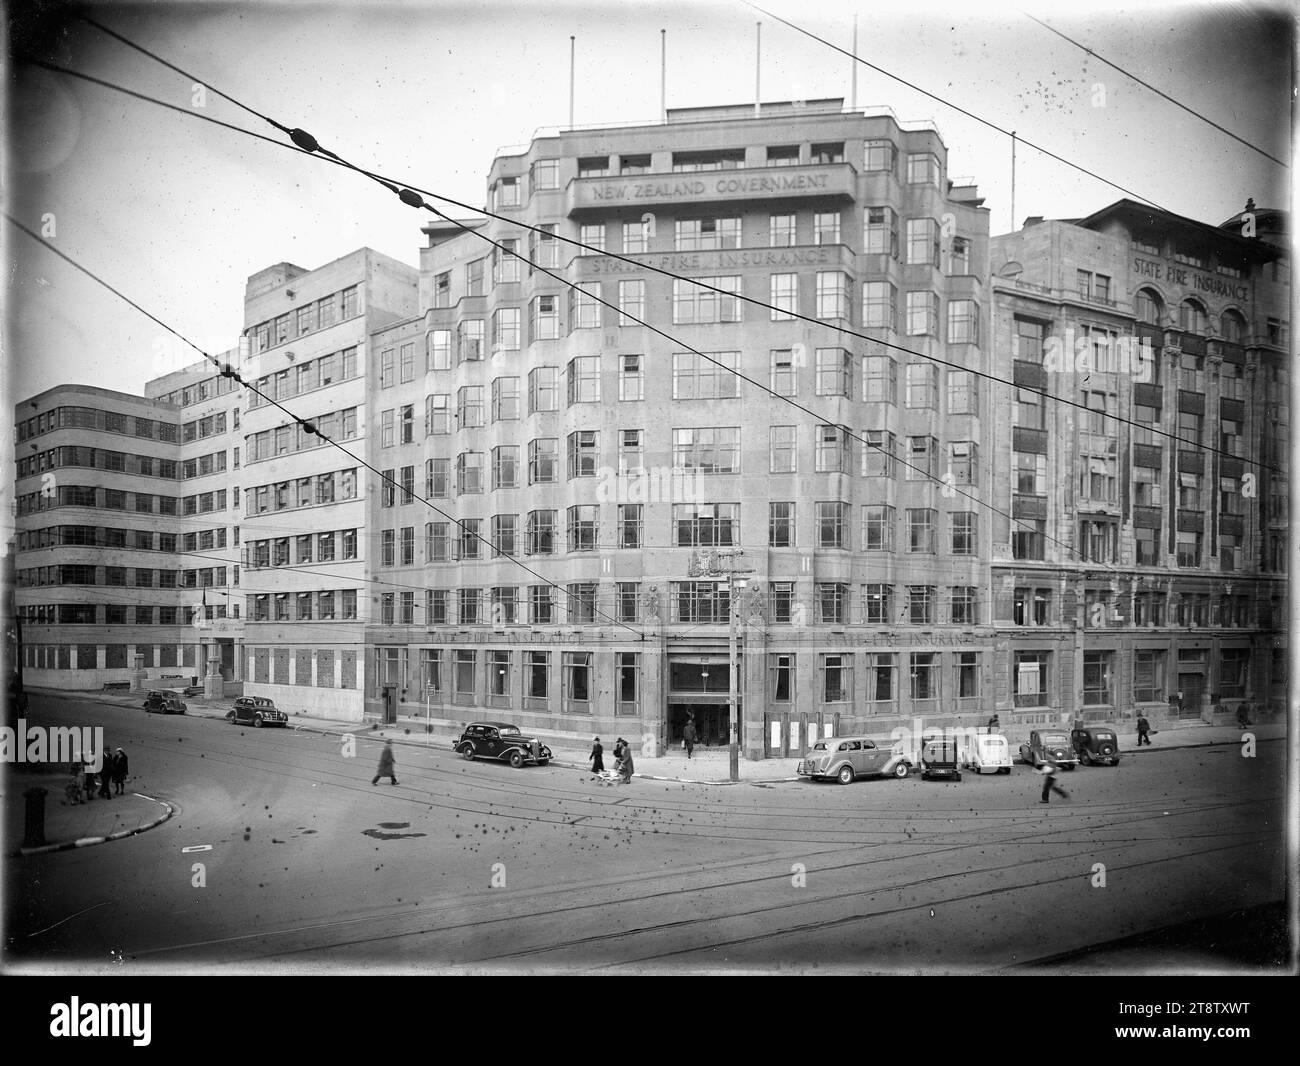 State Insurance Building à l'angle de Stout Street et Lambton Quay, Wellington, Nouvelle-Zélande, vers 1942 Banque D'Images